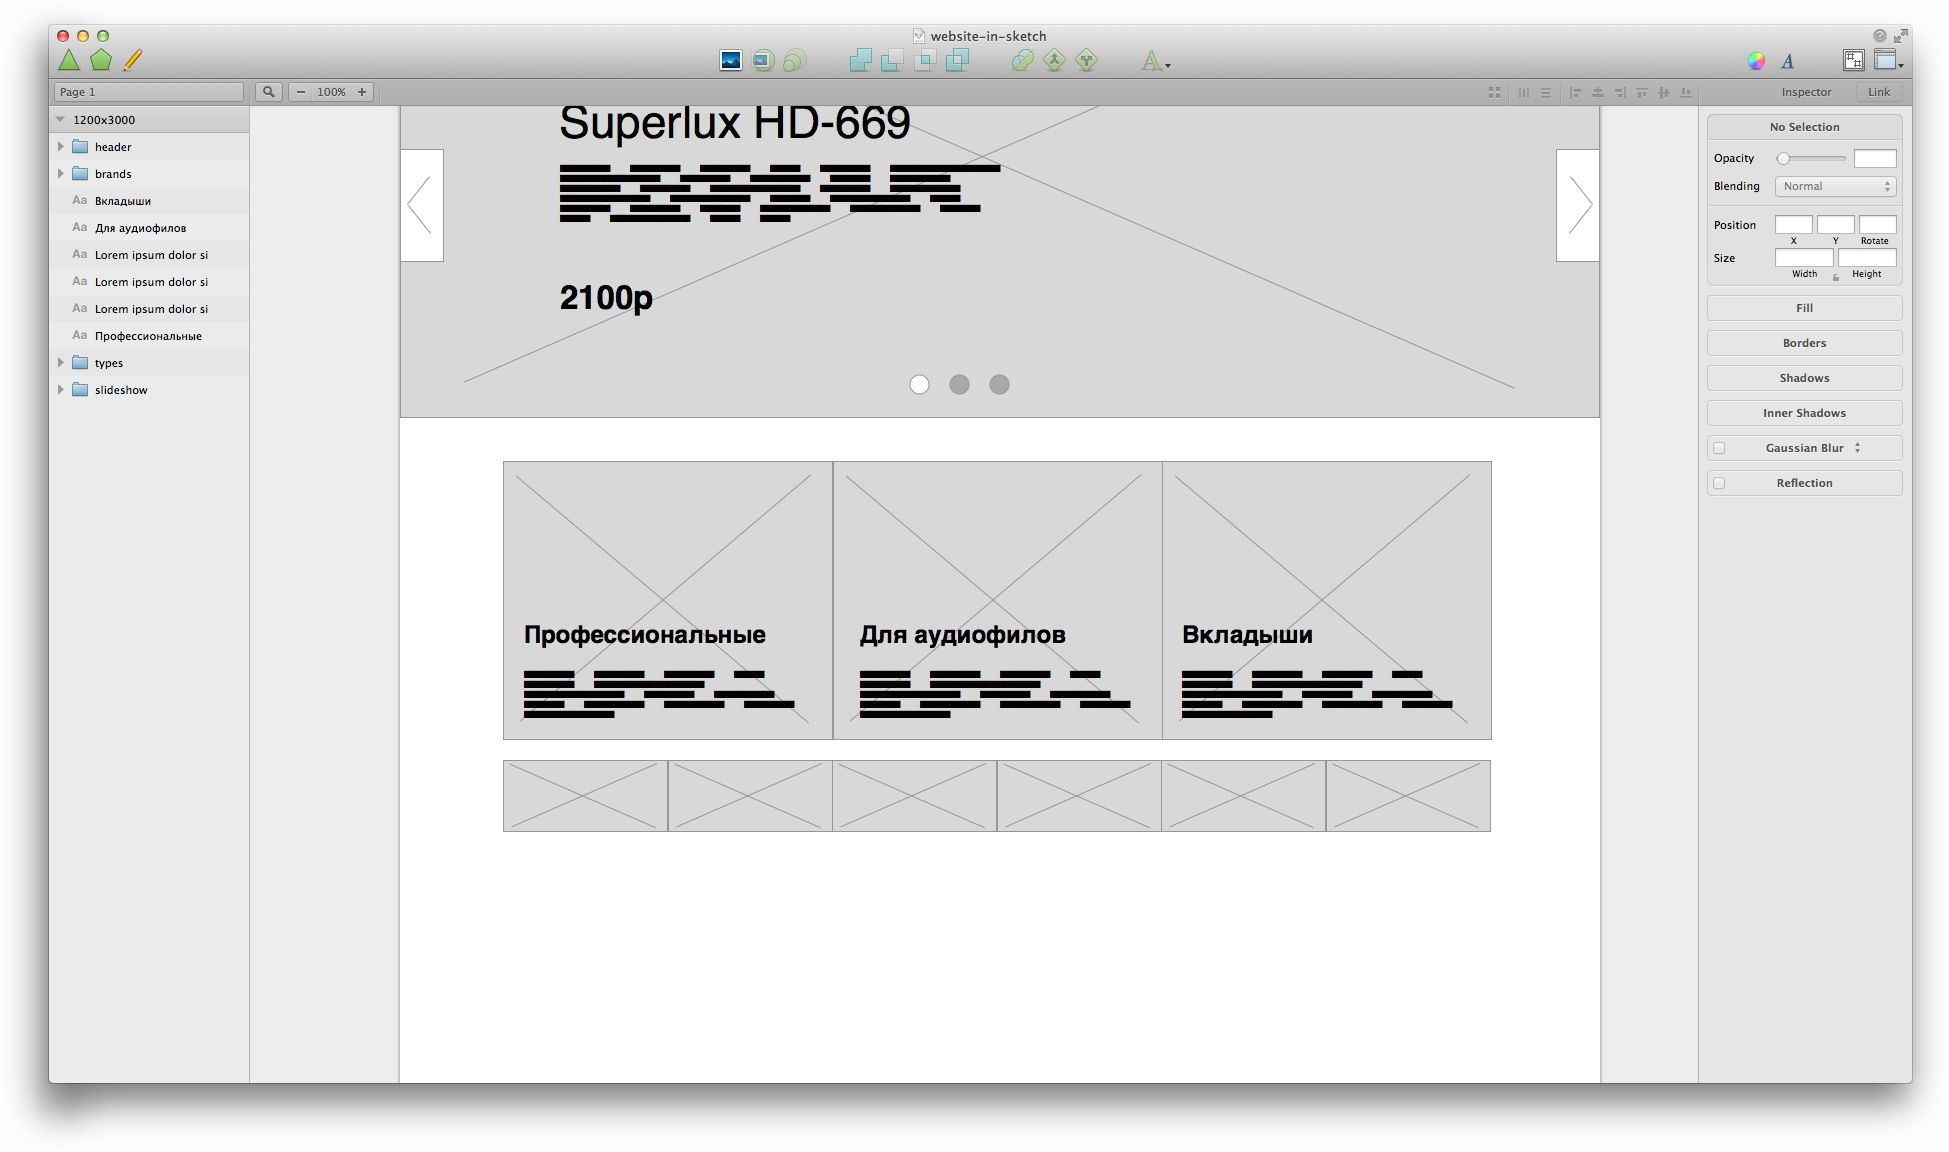 Дизайн сайта в Sketch.app. Часть 1: плагины и прототип